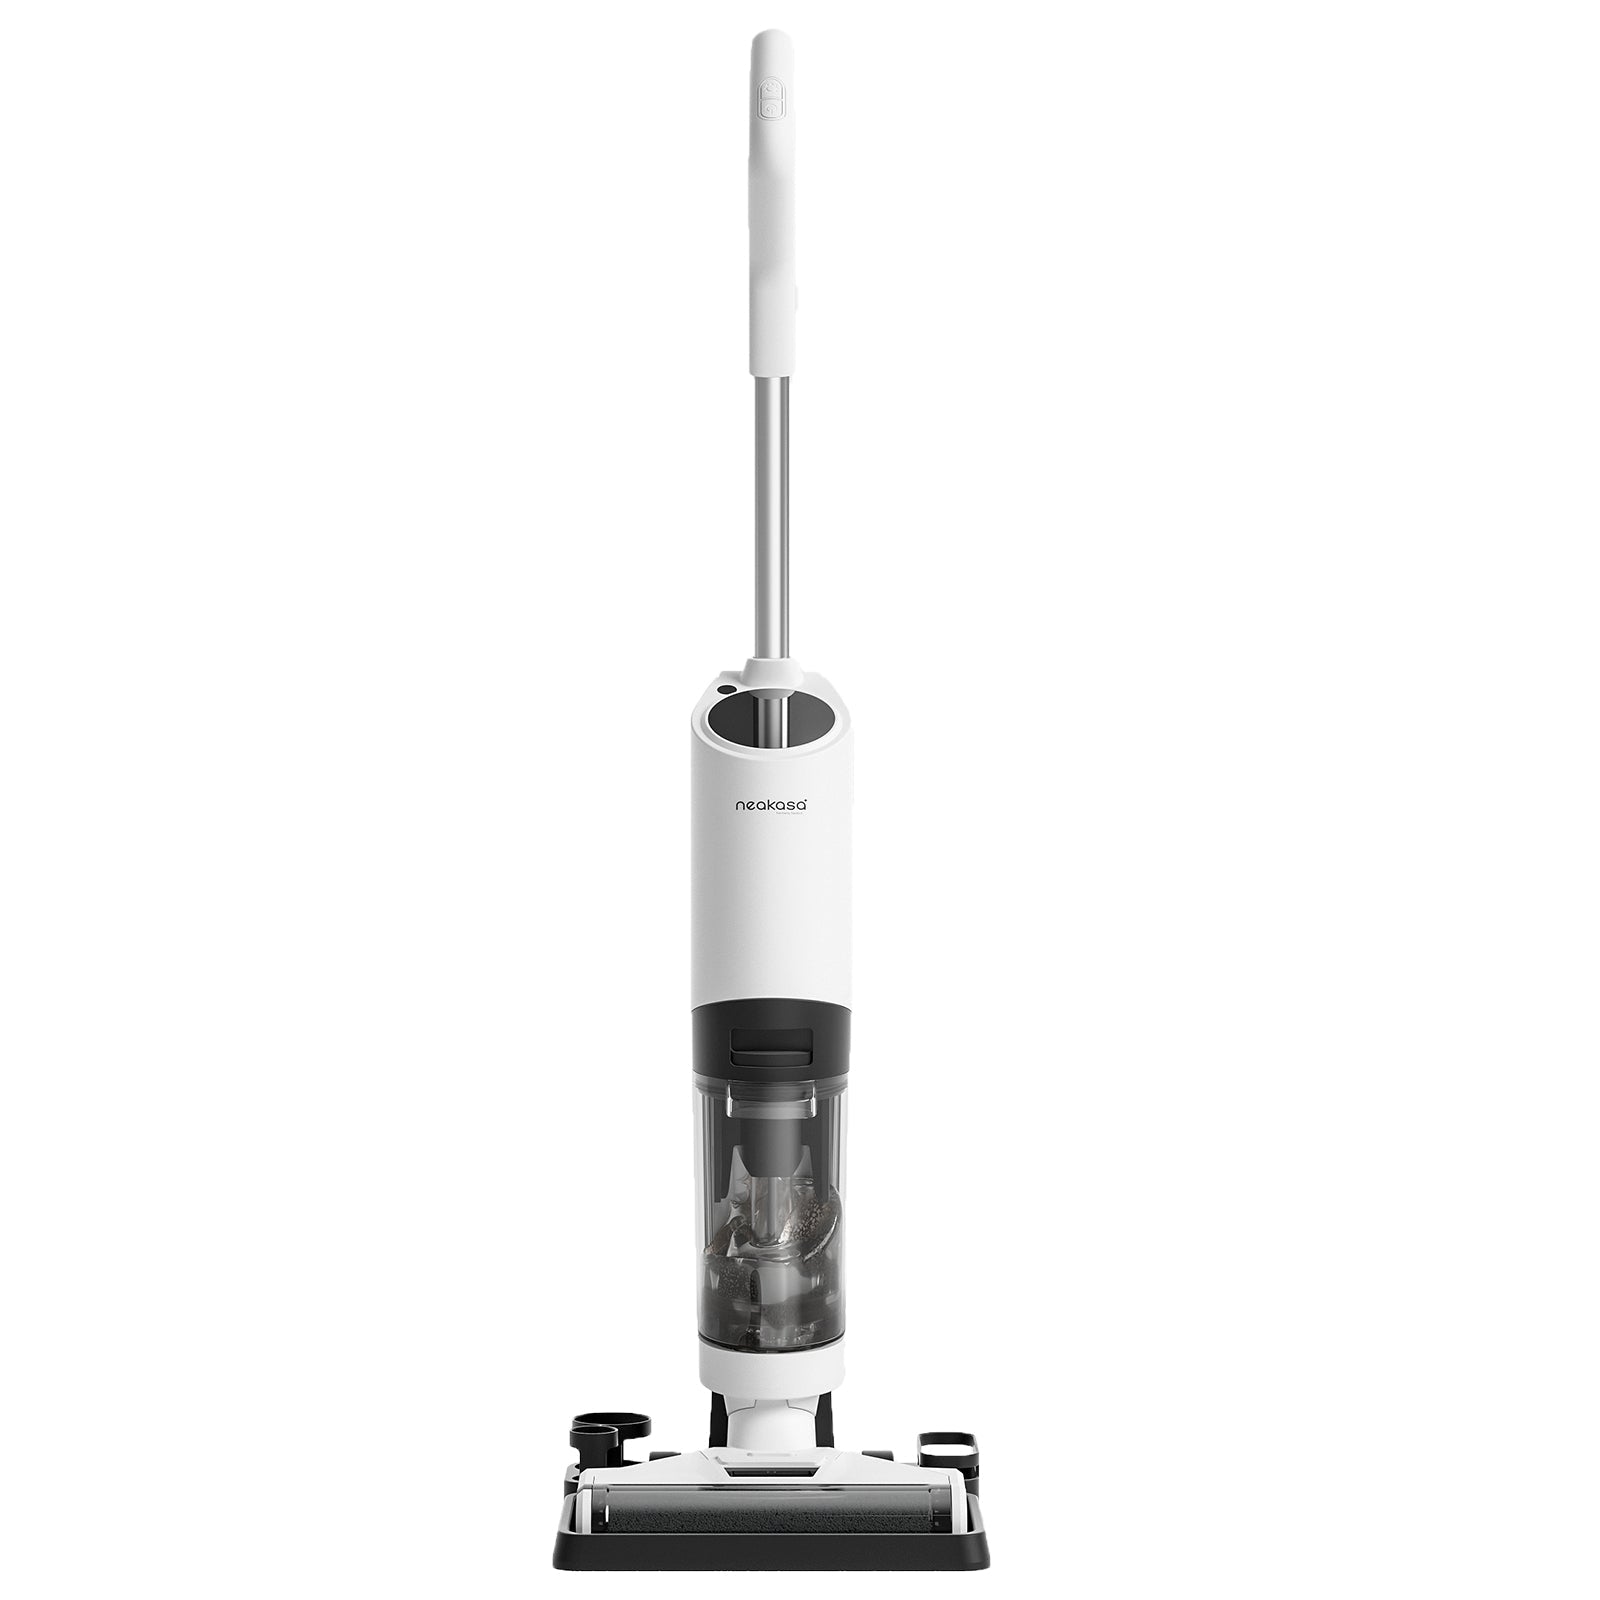 https://img-va.myshopline.com/image/store/1683199708518/neakasa-powerscrub-ii-wet-dry-vacuum-cordless-floor-cleaner-542160.jpg?w=1600&h=1600